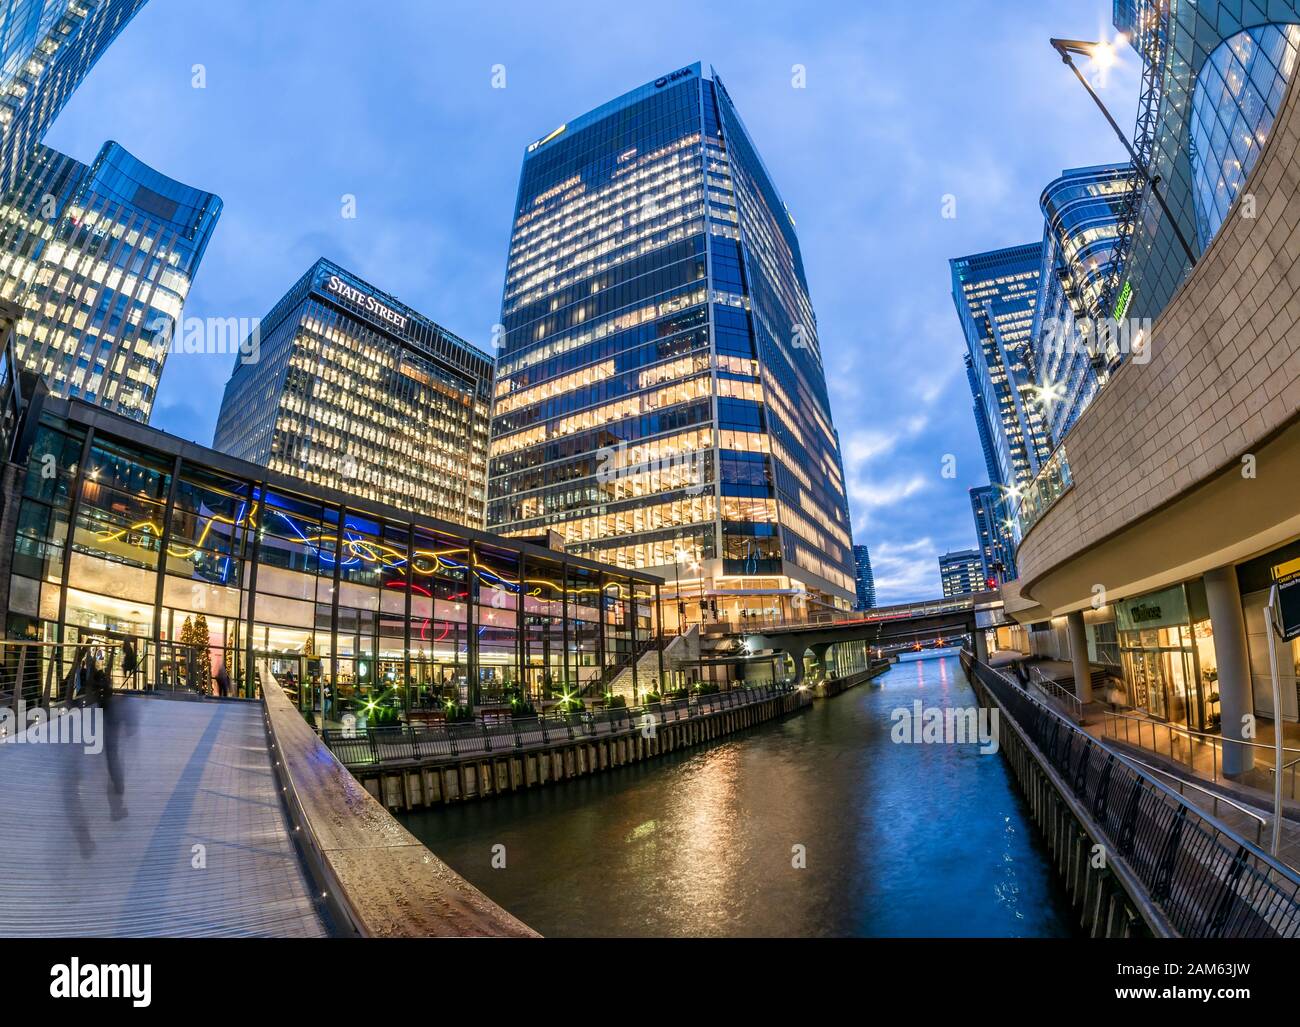 Londra, Inghilterra, Regno Unito - 11 dicembre 2019: Alti edifici commerciali nell'area di Canary Wharf, Churchill Place in One Canada Square all'ora blu Foto Stock